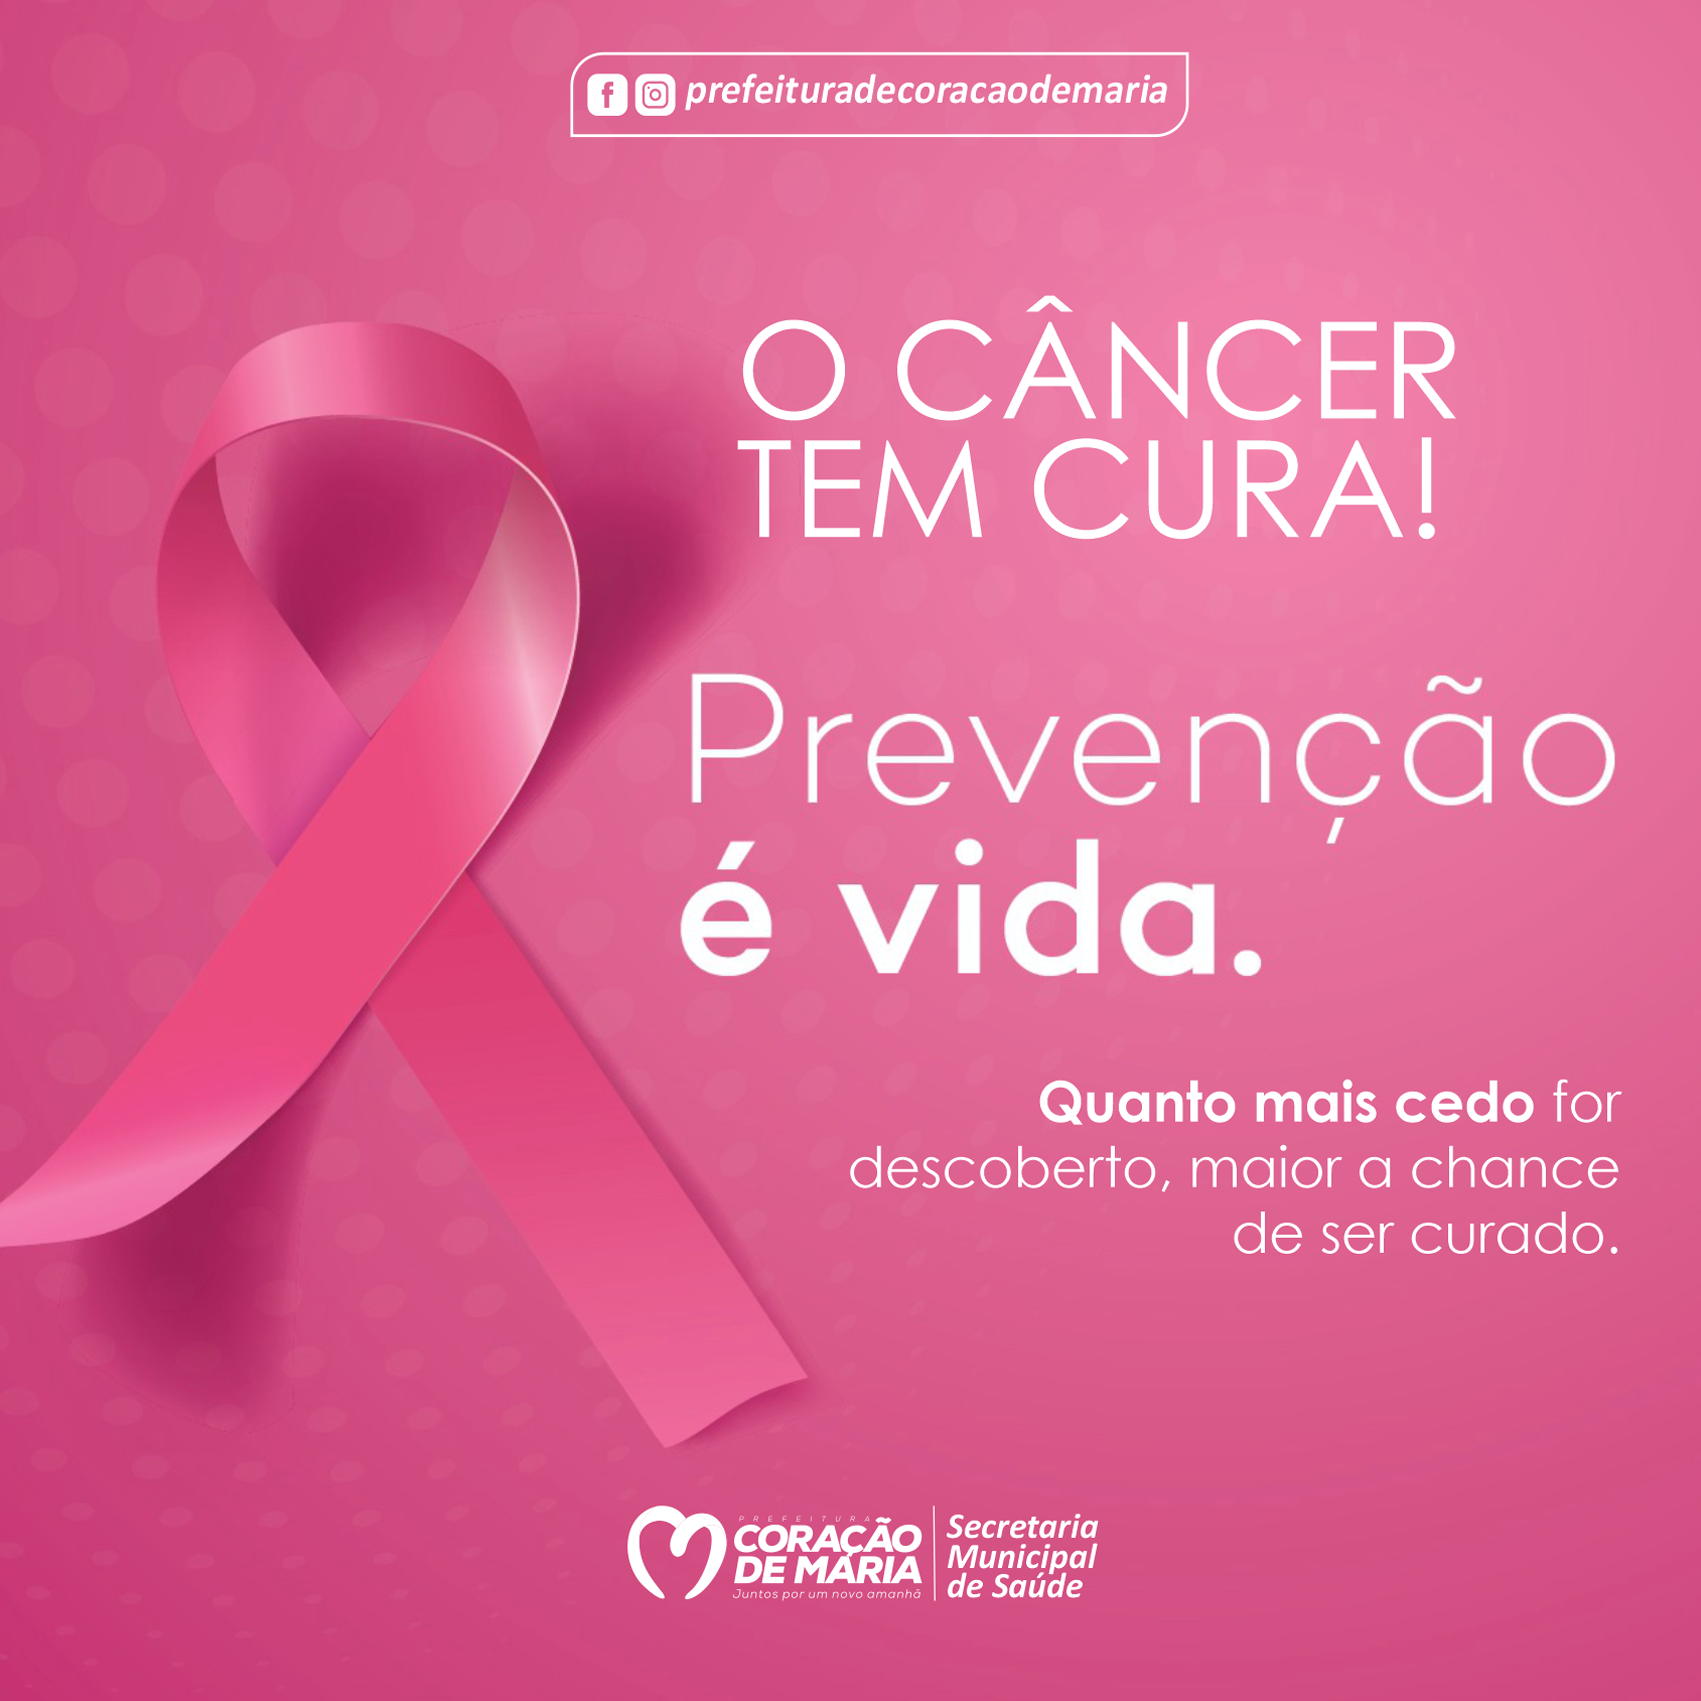 O câncer tem cura sim!